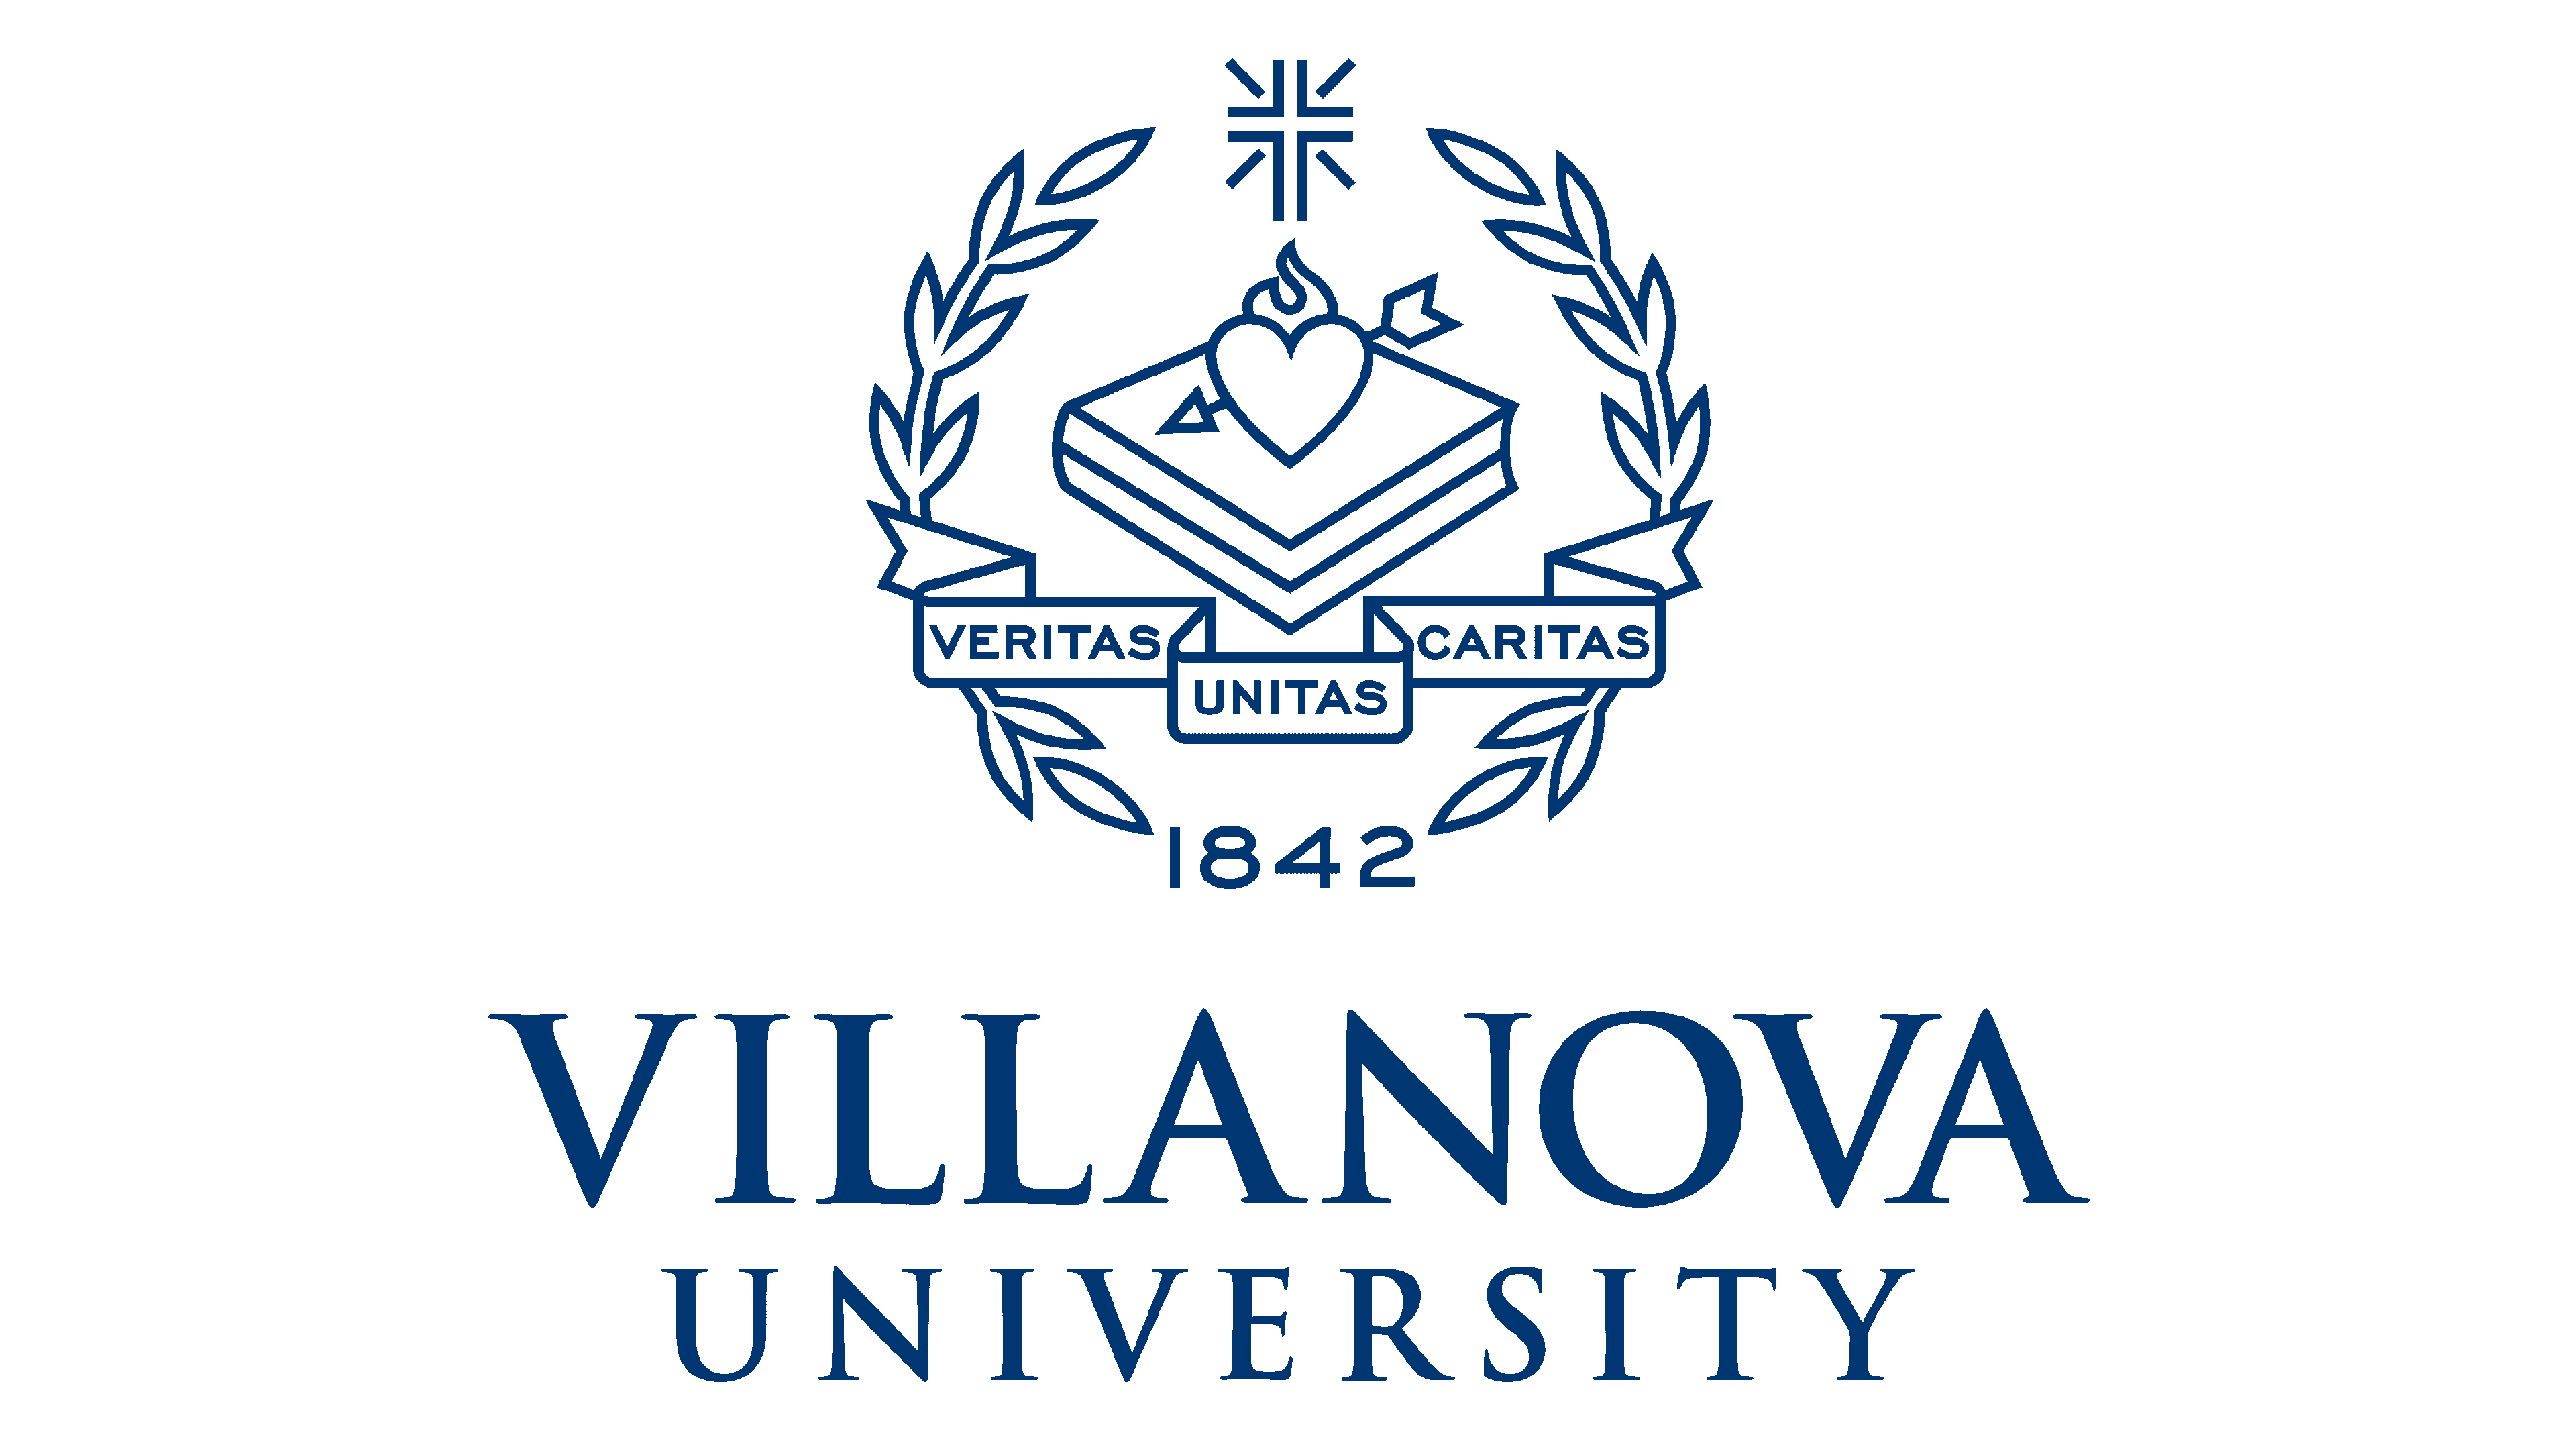 Villanova University Emblem